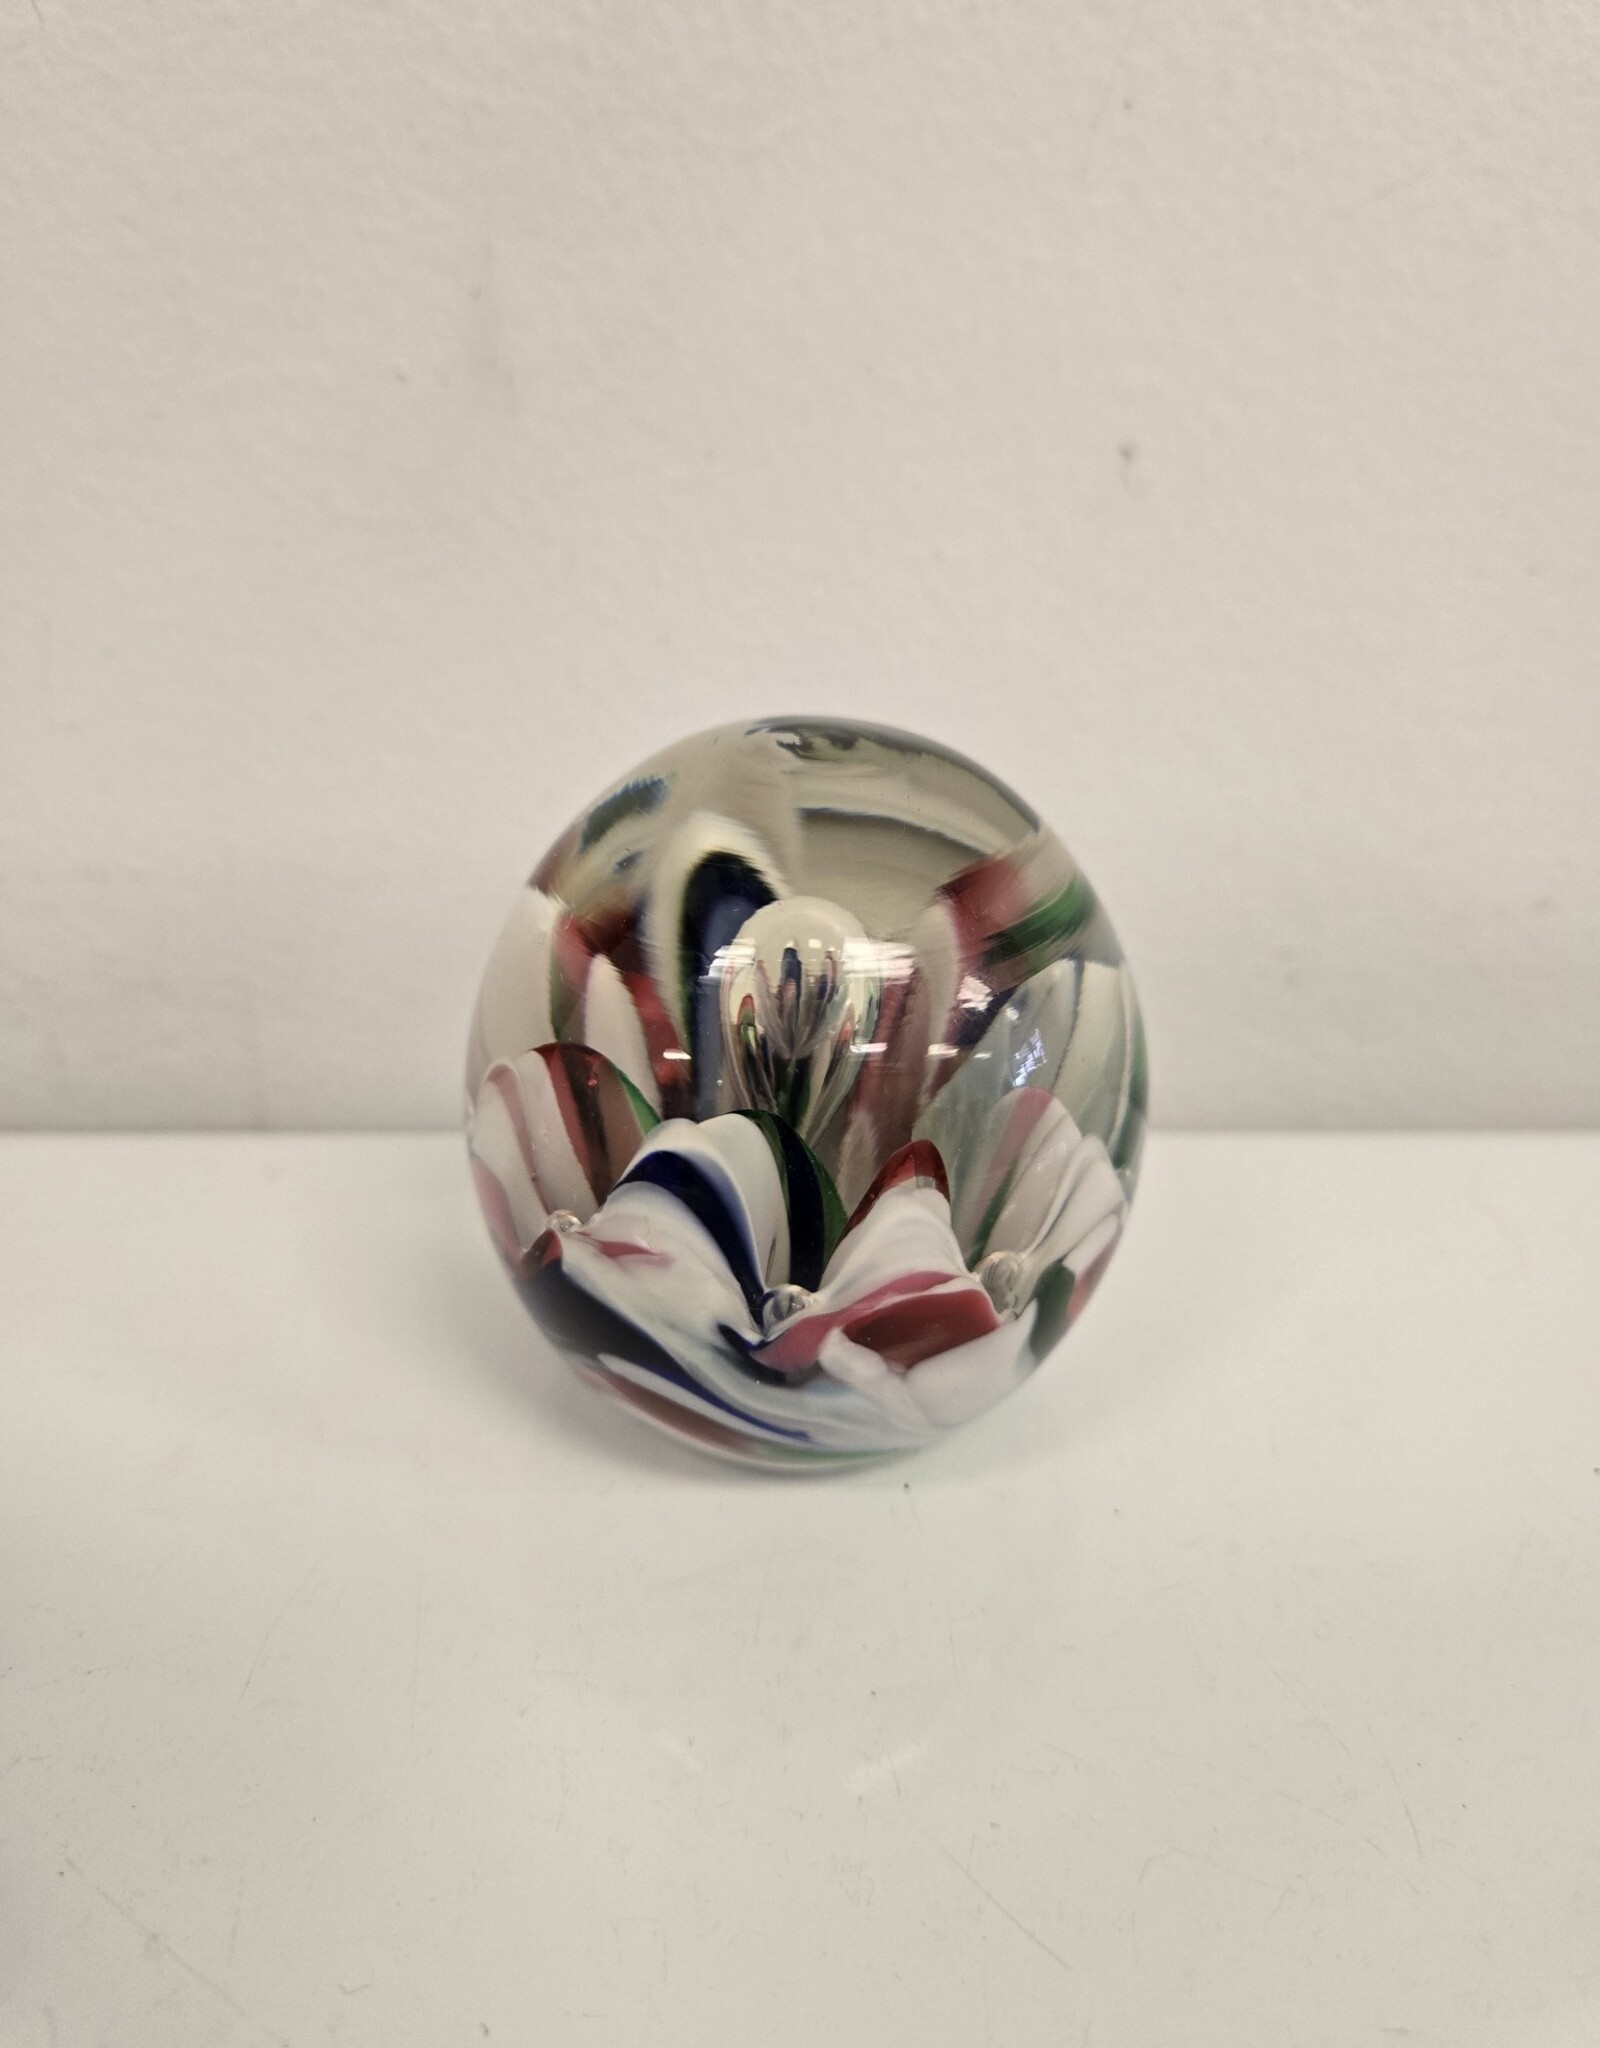 Art Glass Paperweight - 2.5" x 2.5"